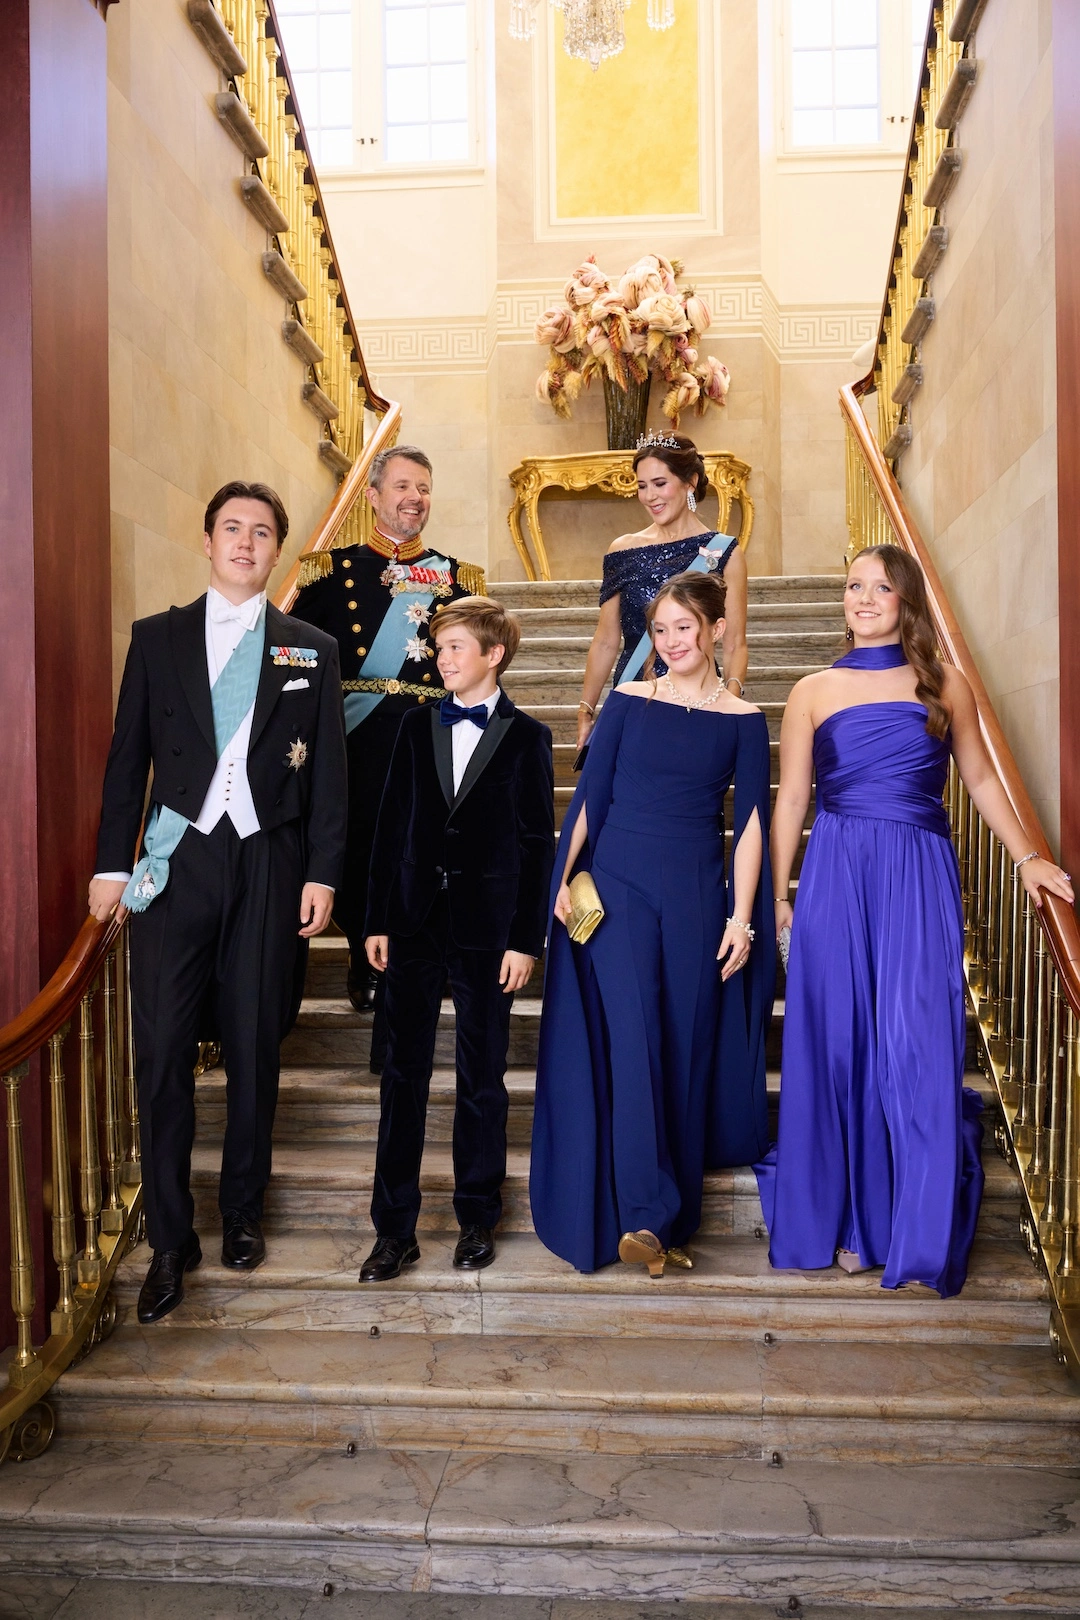 Dänische Royals offizielle Fotos von Prinz Christian und Familie